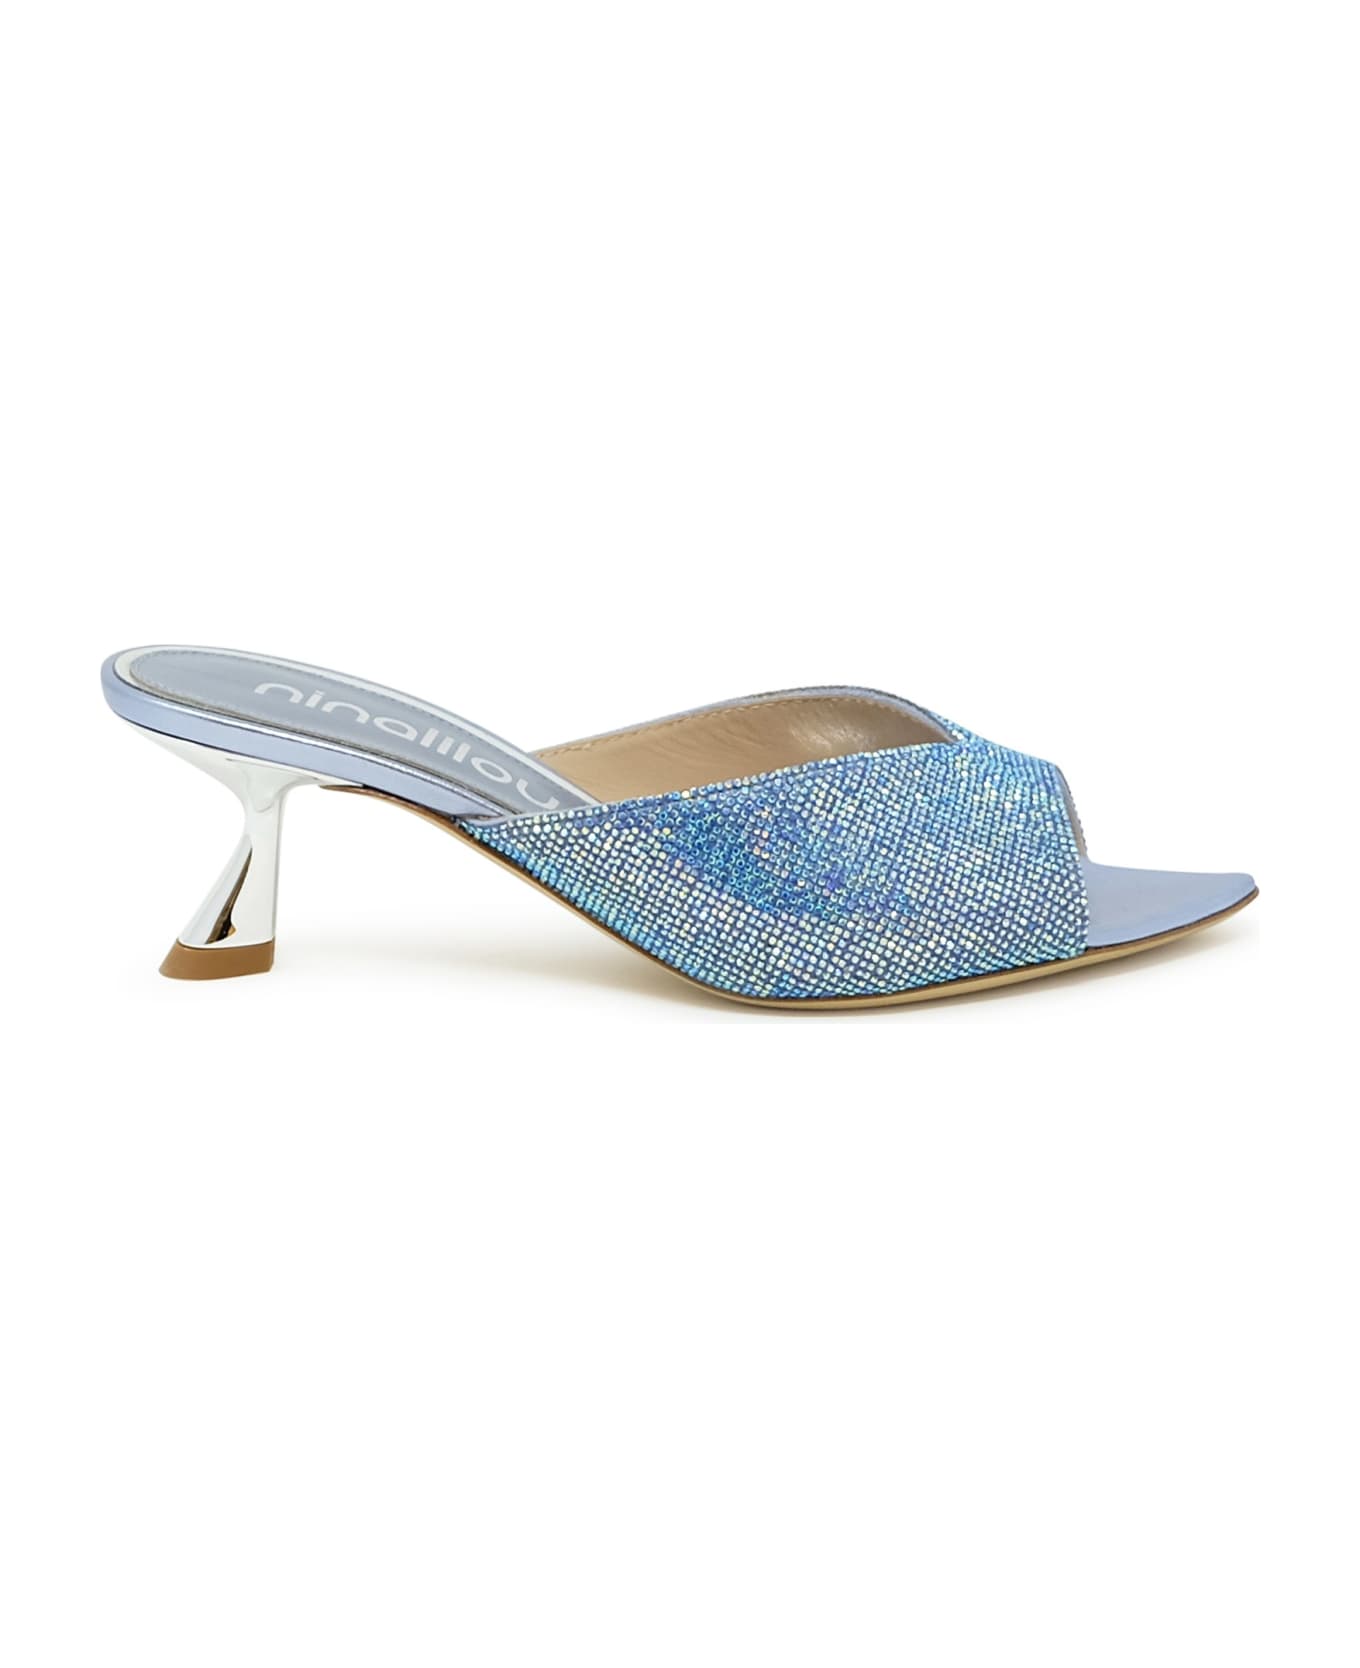 Ninalilou 341080p5/17 Blue/swaroski Leather Sabot Sandals - BLUE サンダル